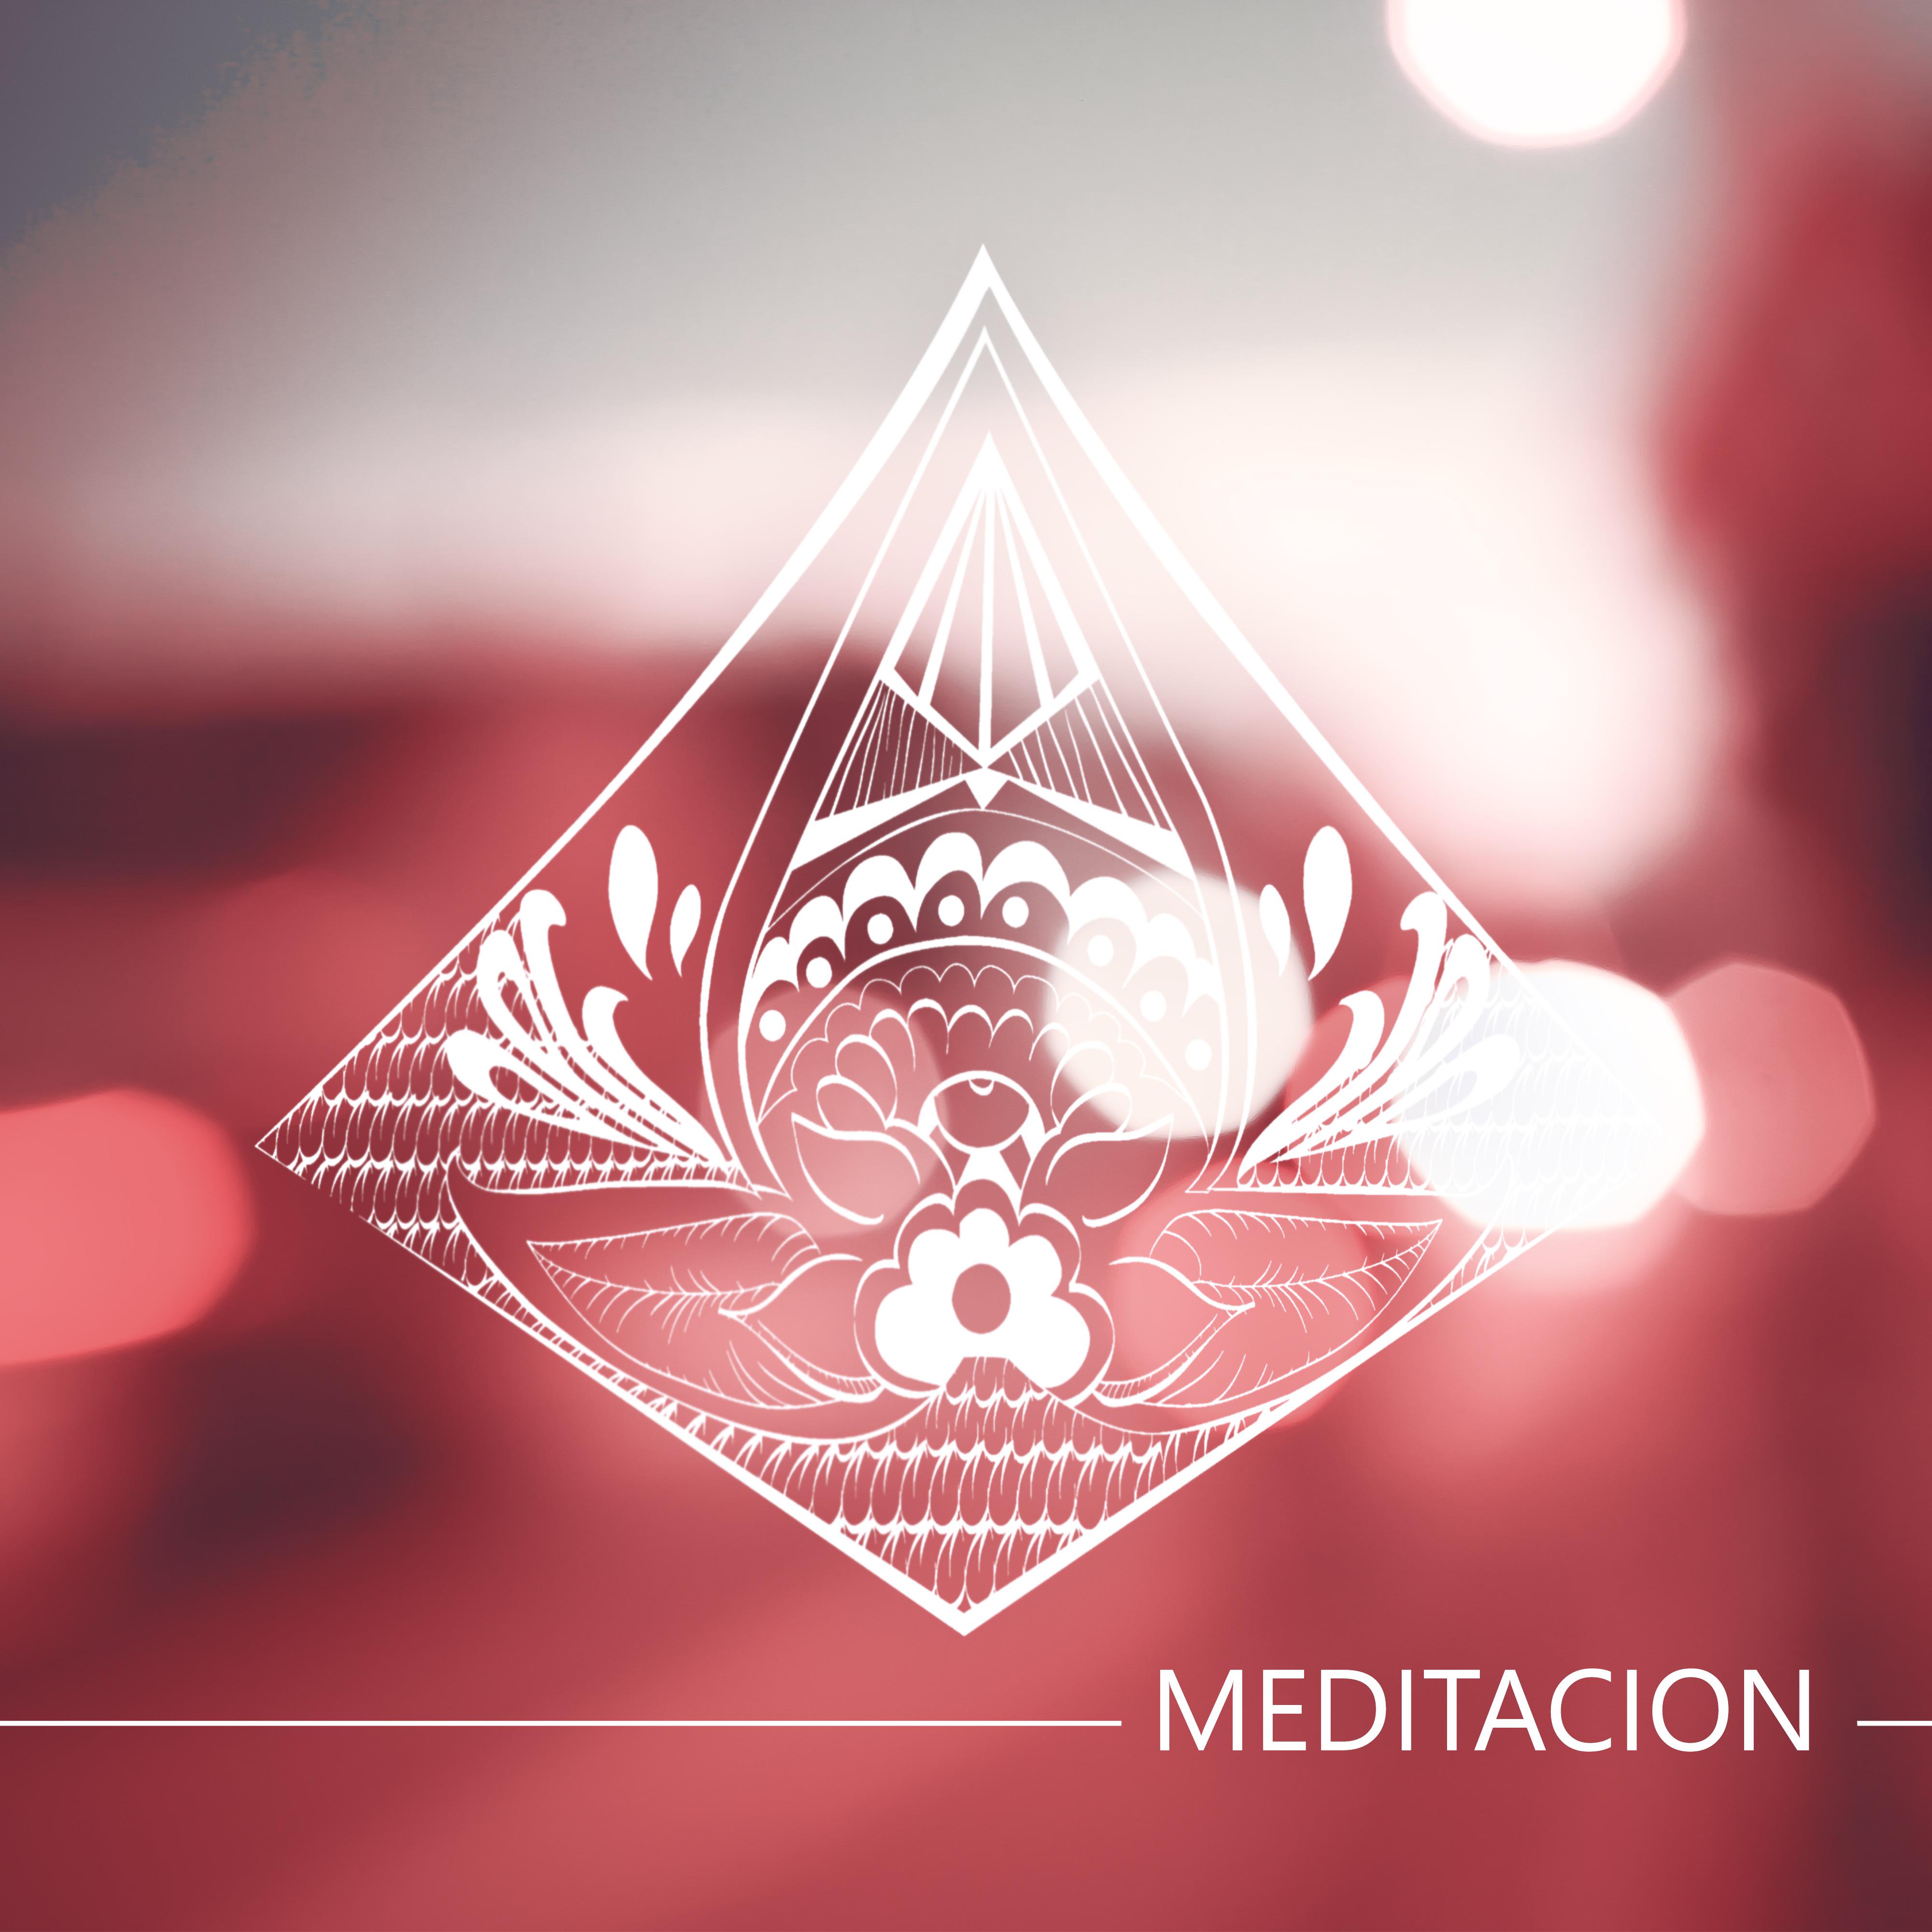 Meditacion – Relajacion y Practicar Yoga, Spa, Musica Instrumental Relajante, Masaje, Reiki, Musica Ambiente, Zen, Masaje